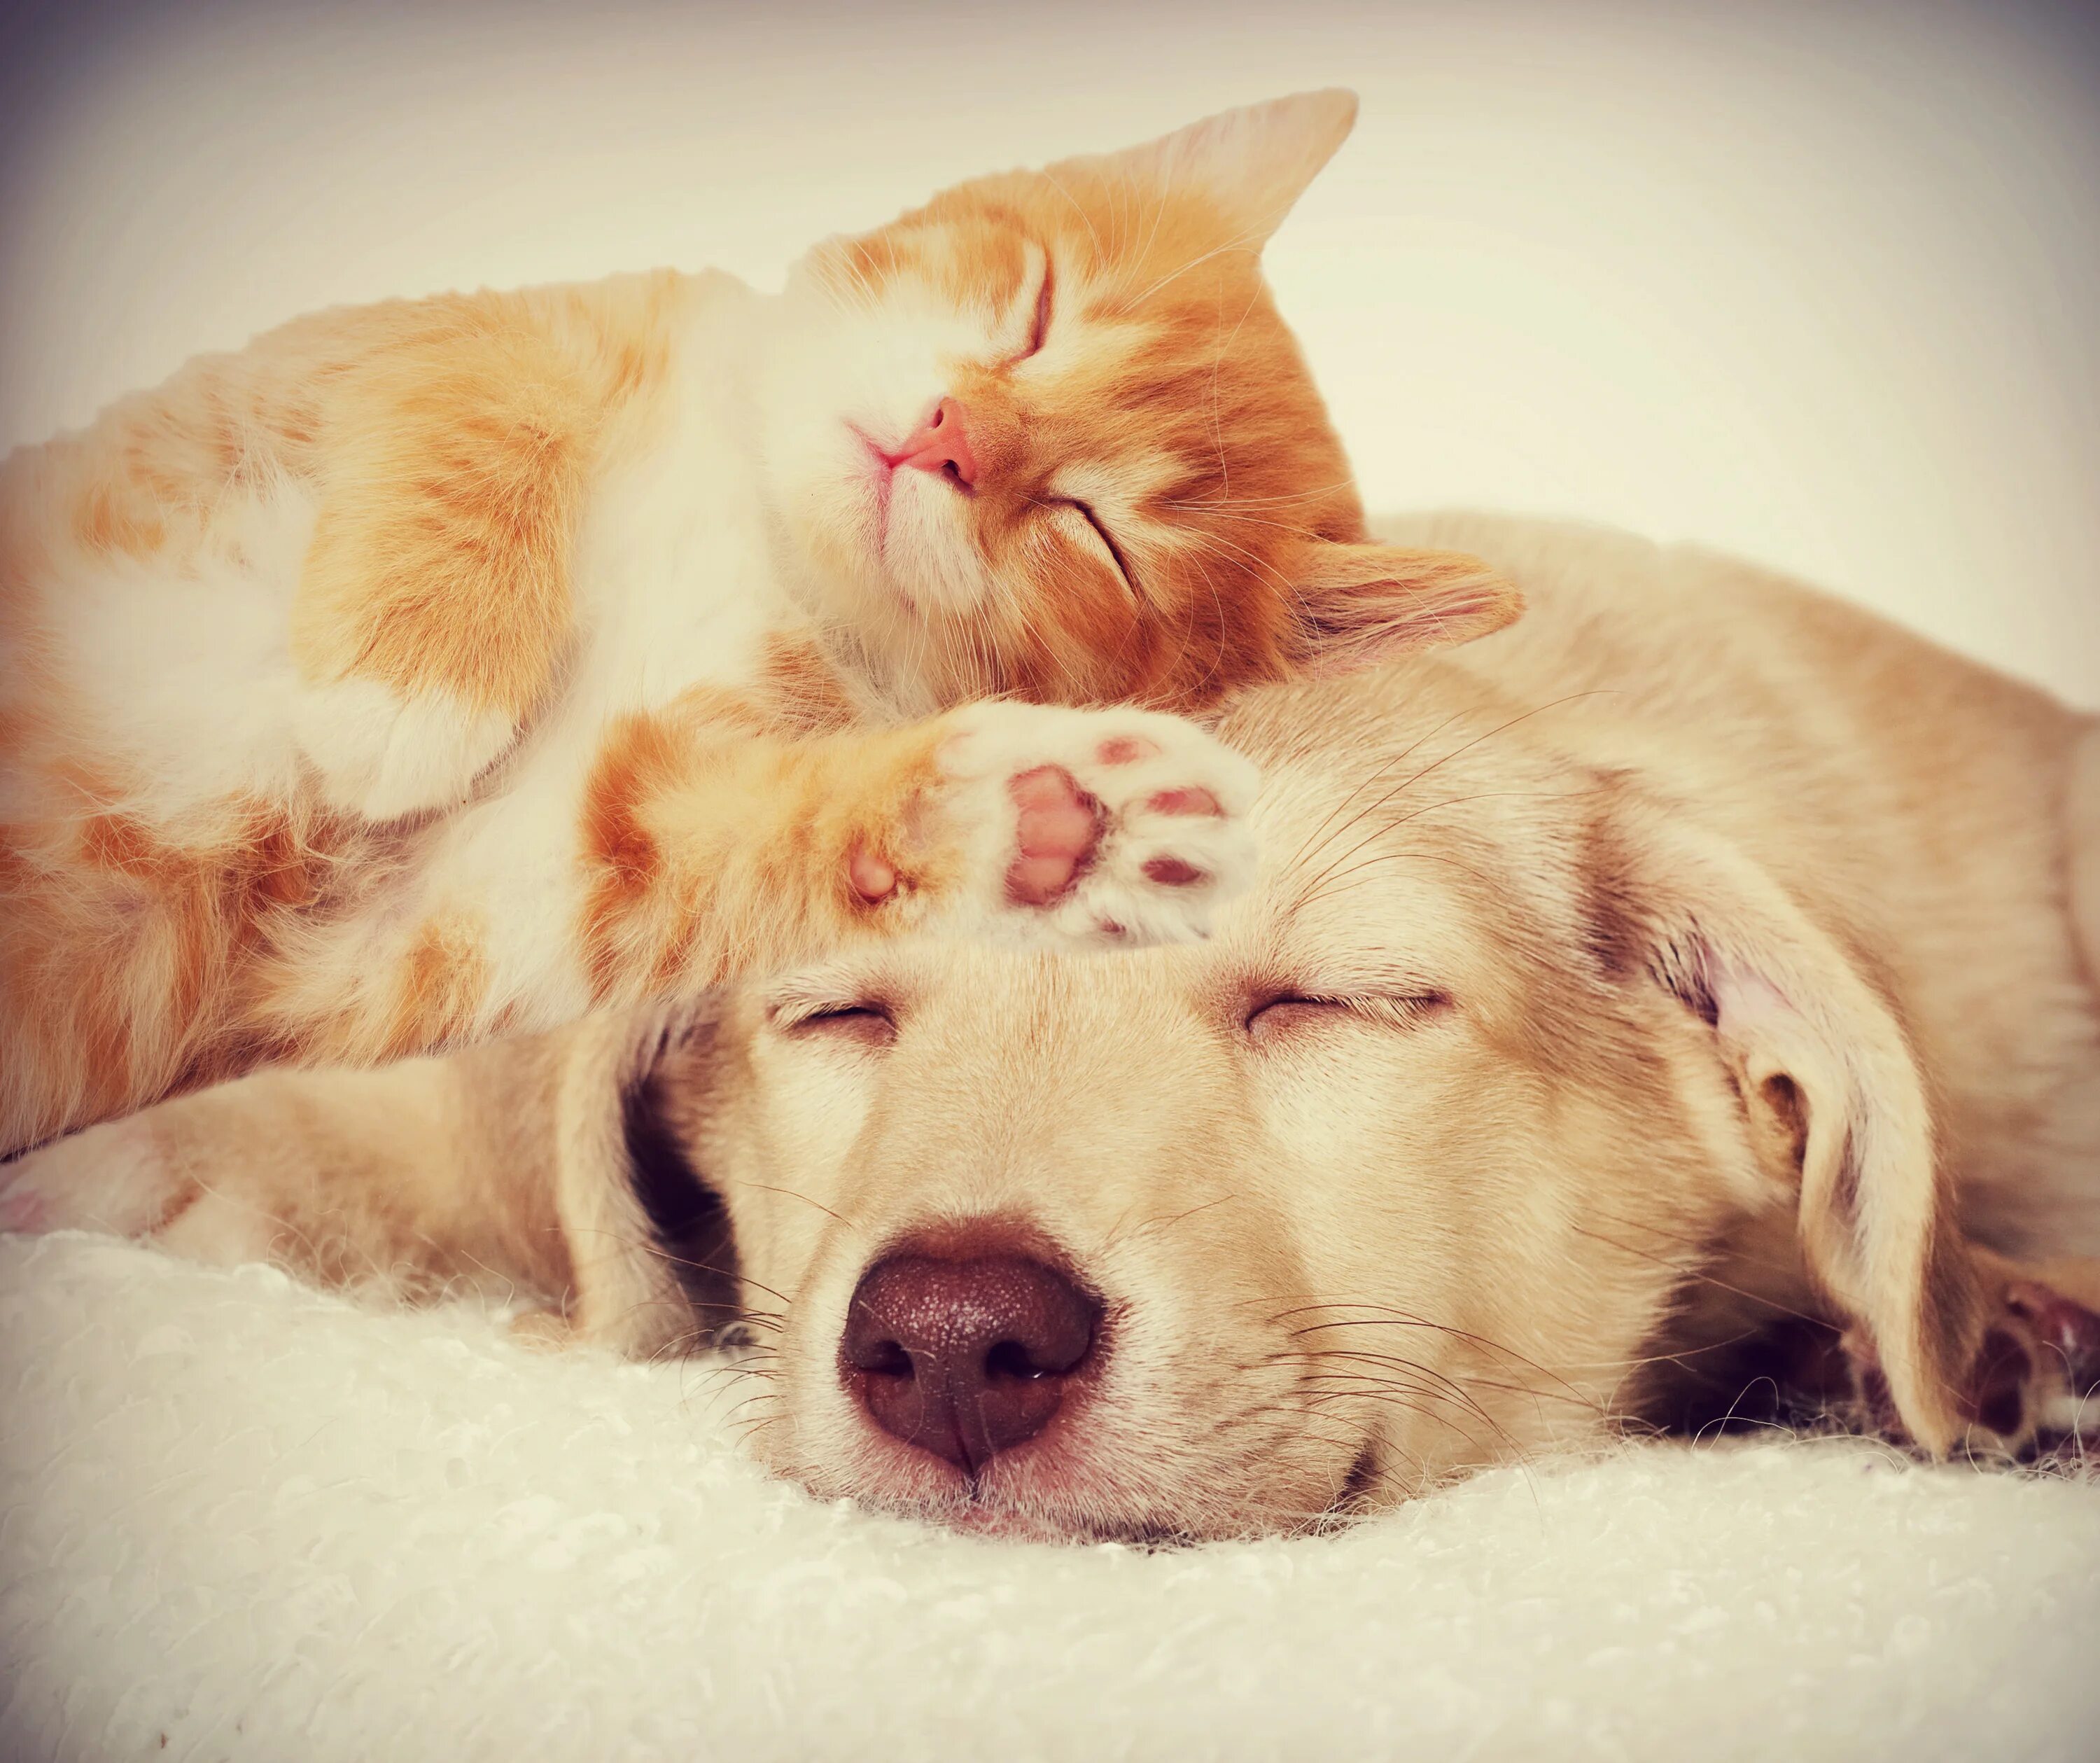 Кот и собака спят вместе. Собака и кошка вместе. Кошка с собакой в обнимку. Коти соьака спчт вместе.